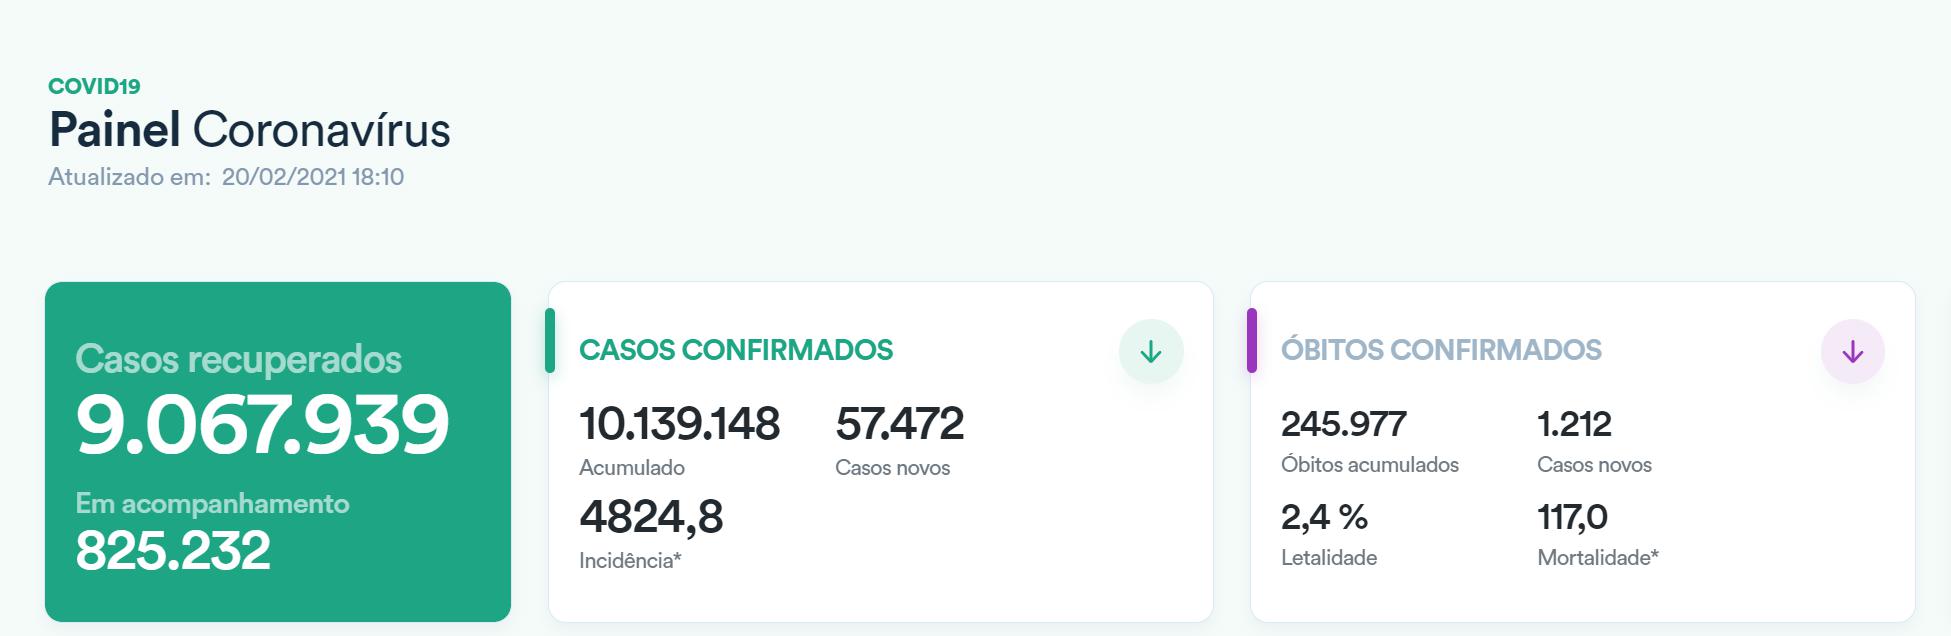 巴西新增新冠肺炎确诊病例57472例 累计确诊10139148例